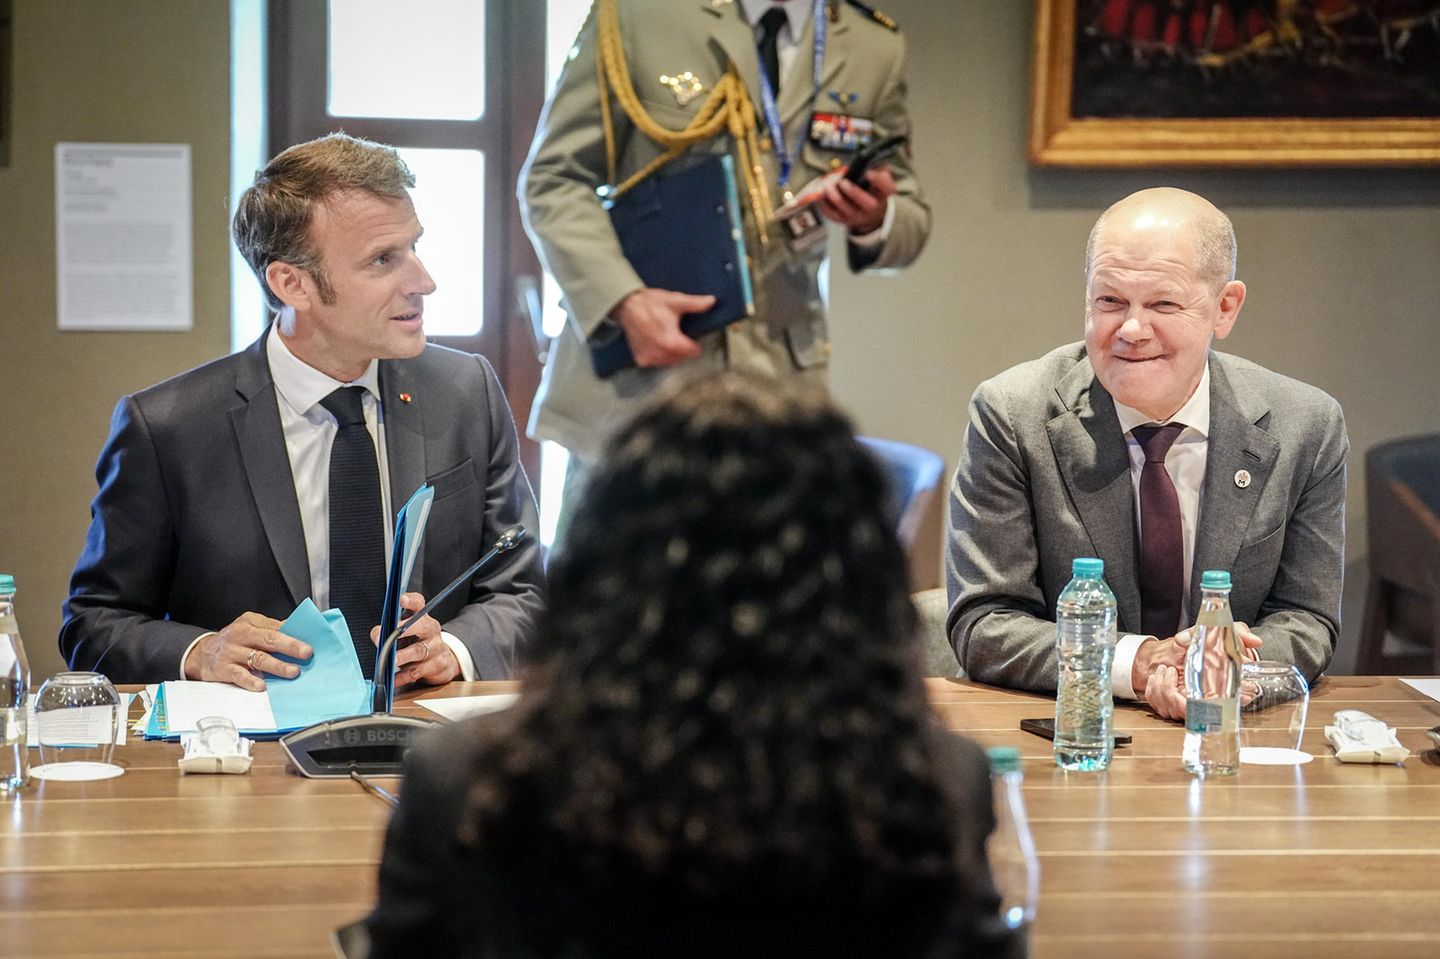 Scholz und Macron am Konferenztisch in Moldau